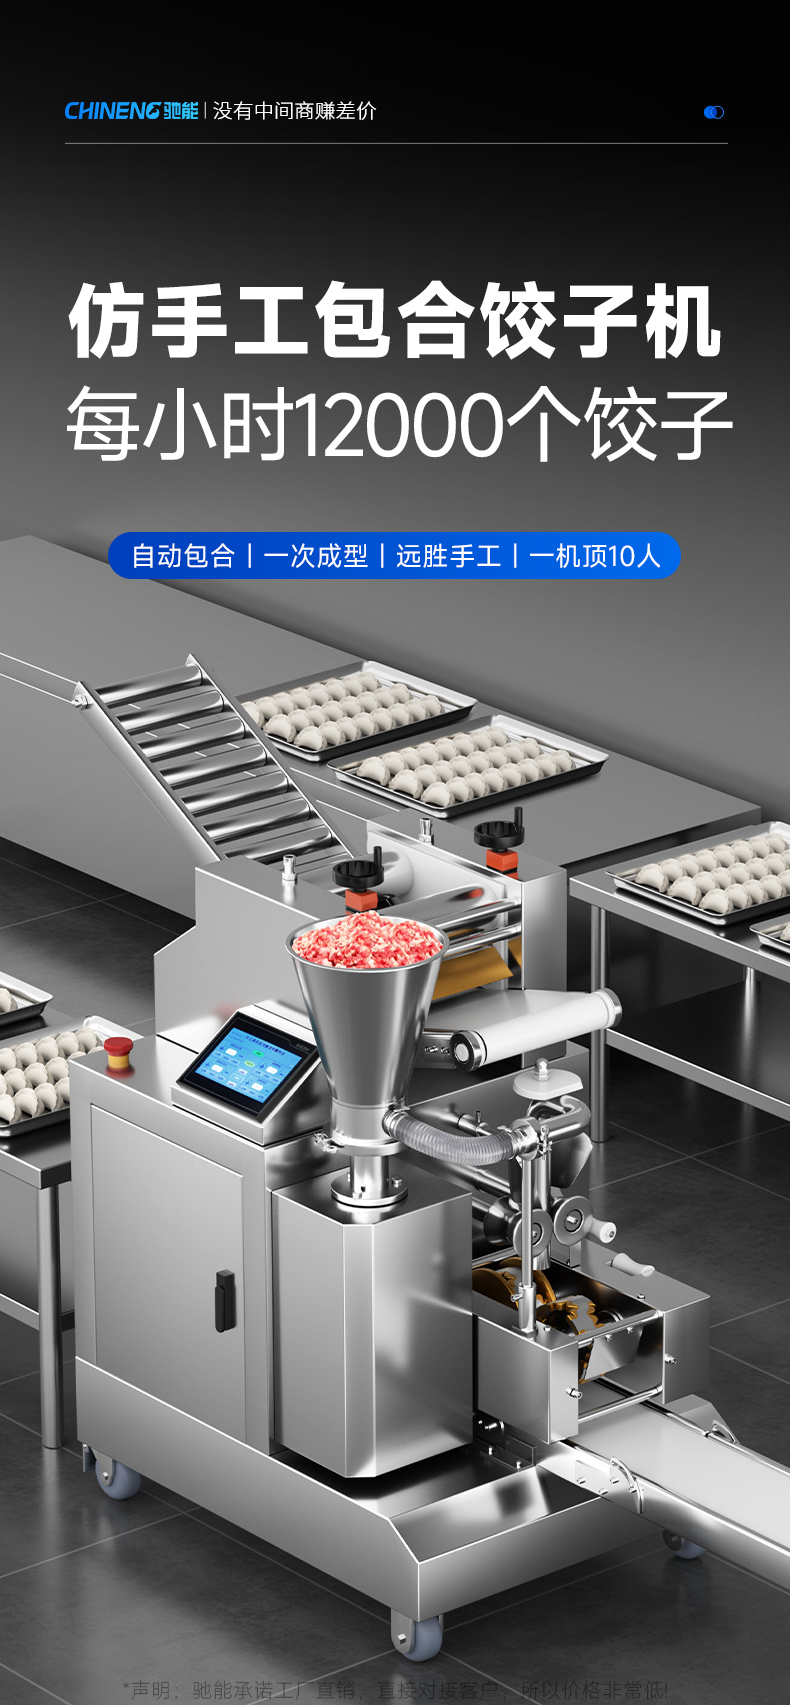 饺子机每小时1200个饺子产量